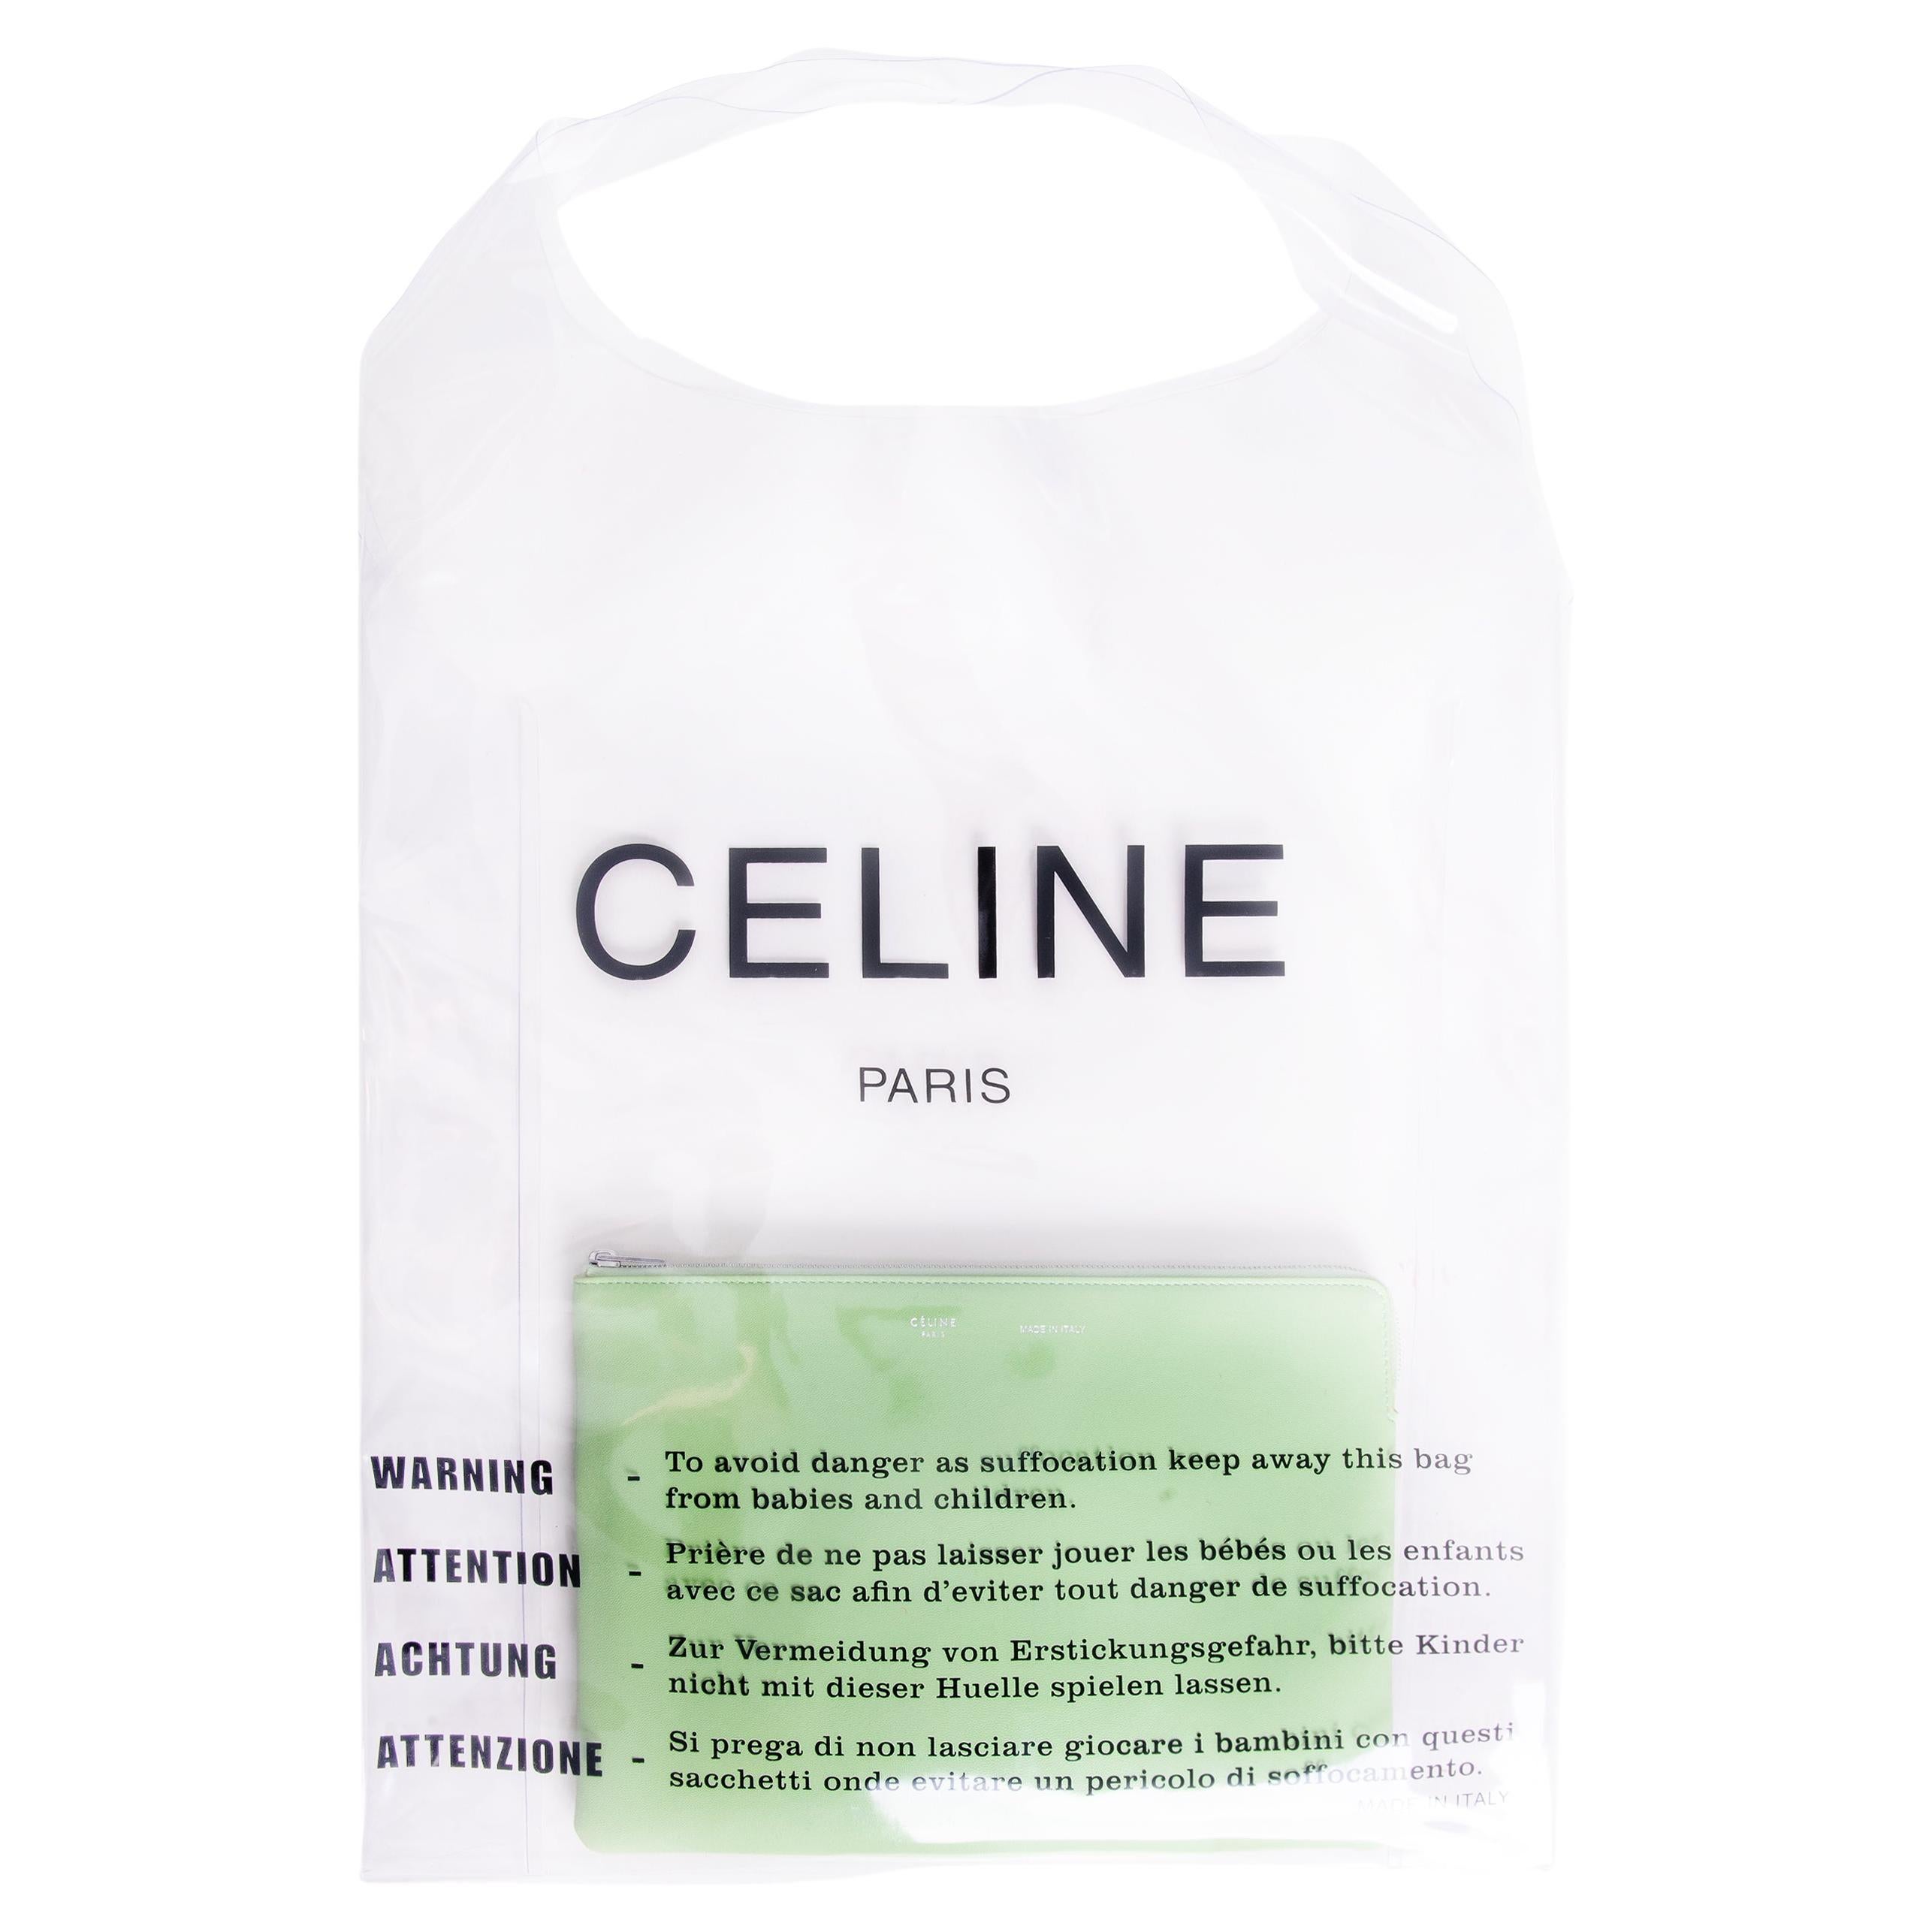 S/S 2018 Old Céline by Phoebe Philo Sac à main en PVC avec pochette intérieure verte en vente